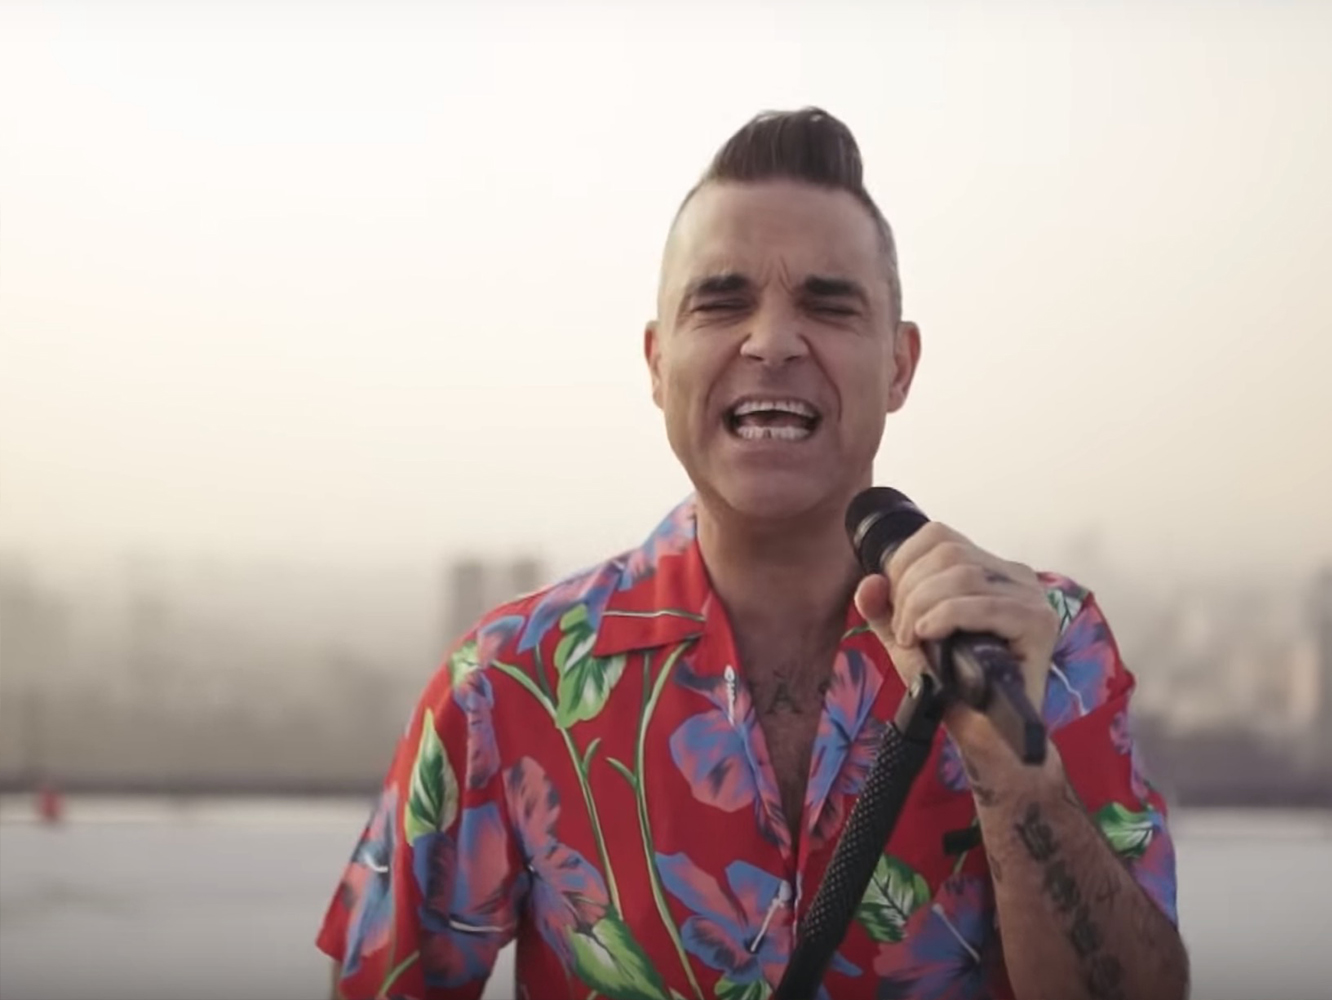  Robbie Williams anuncia nuevo mixtape y lanza ‘I Just Want People To Like Me’ como adelanto